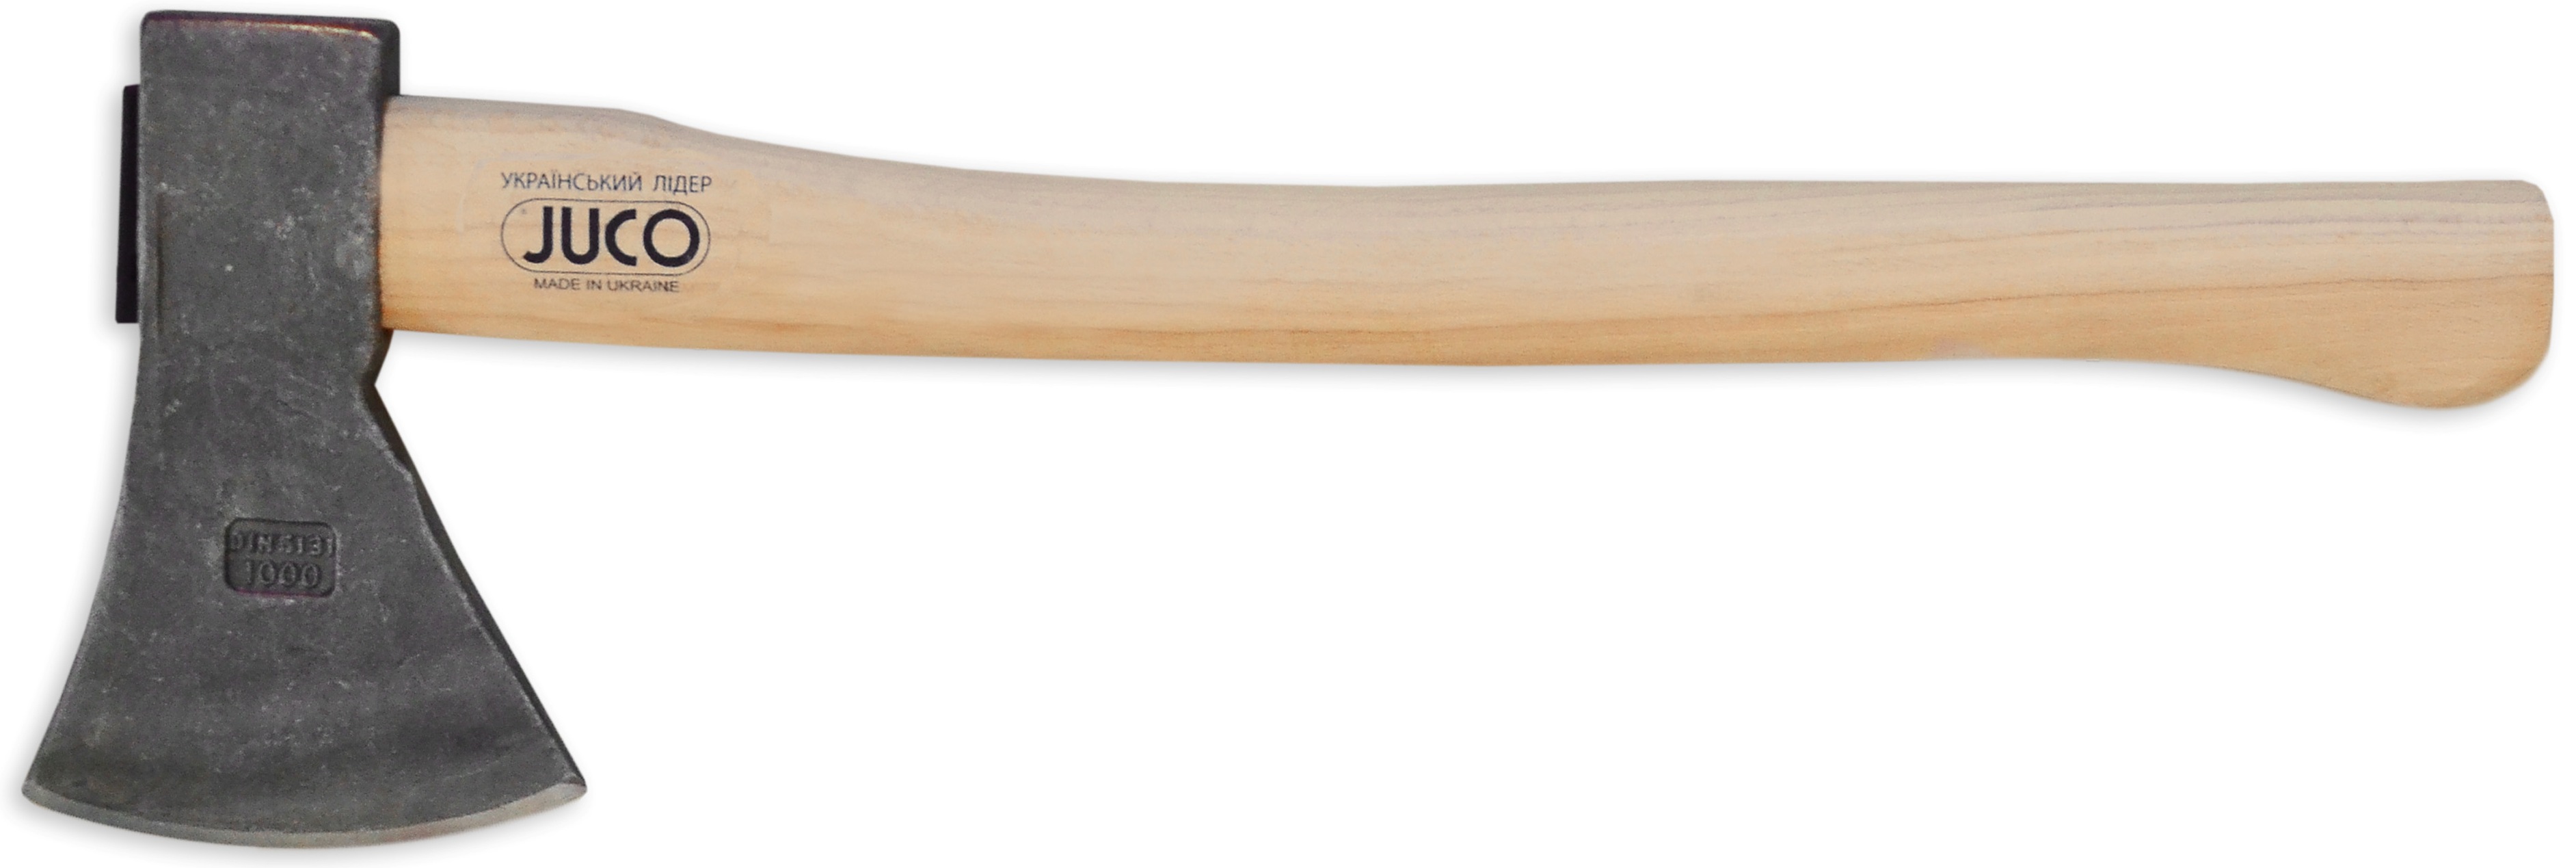 39-658 Топор с деревянной ручкой, JUCO (Украина), 1500 г